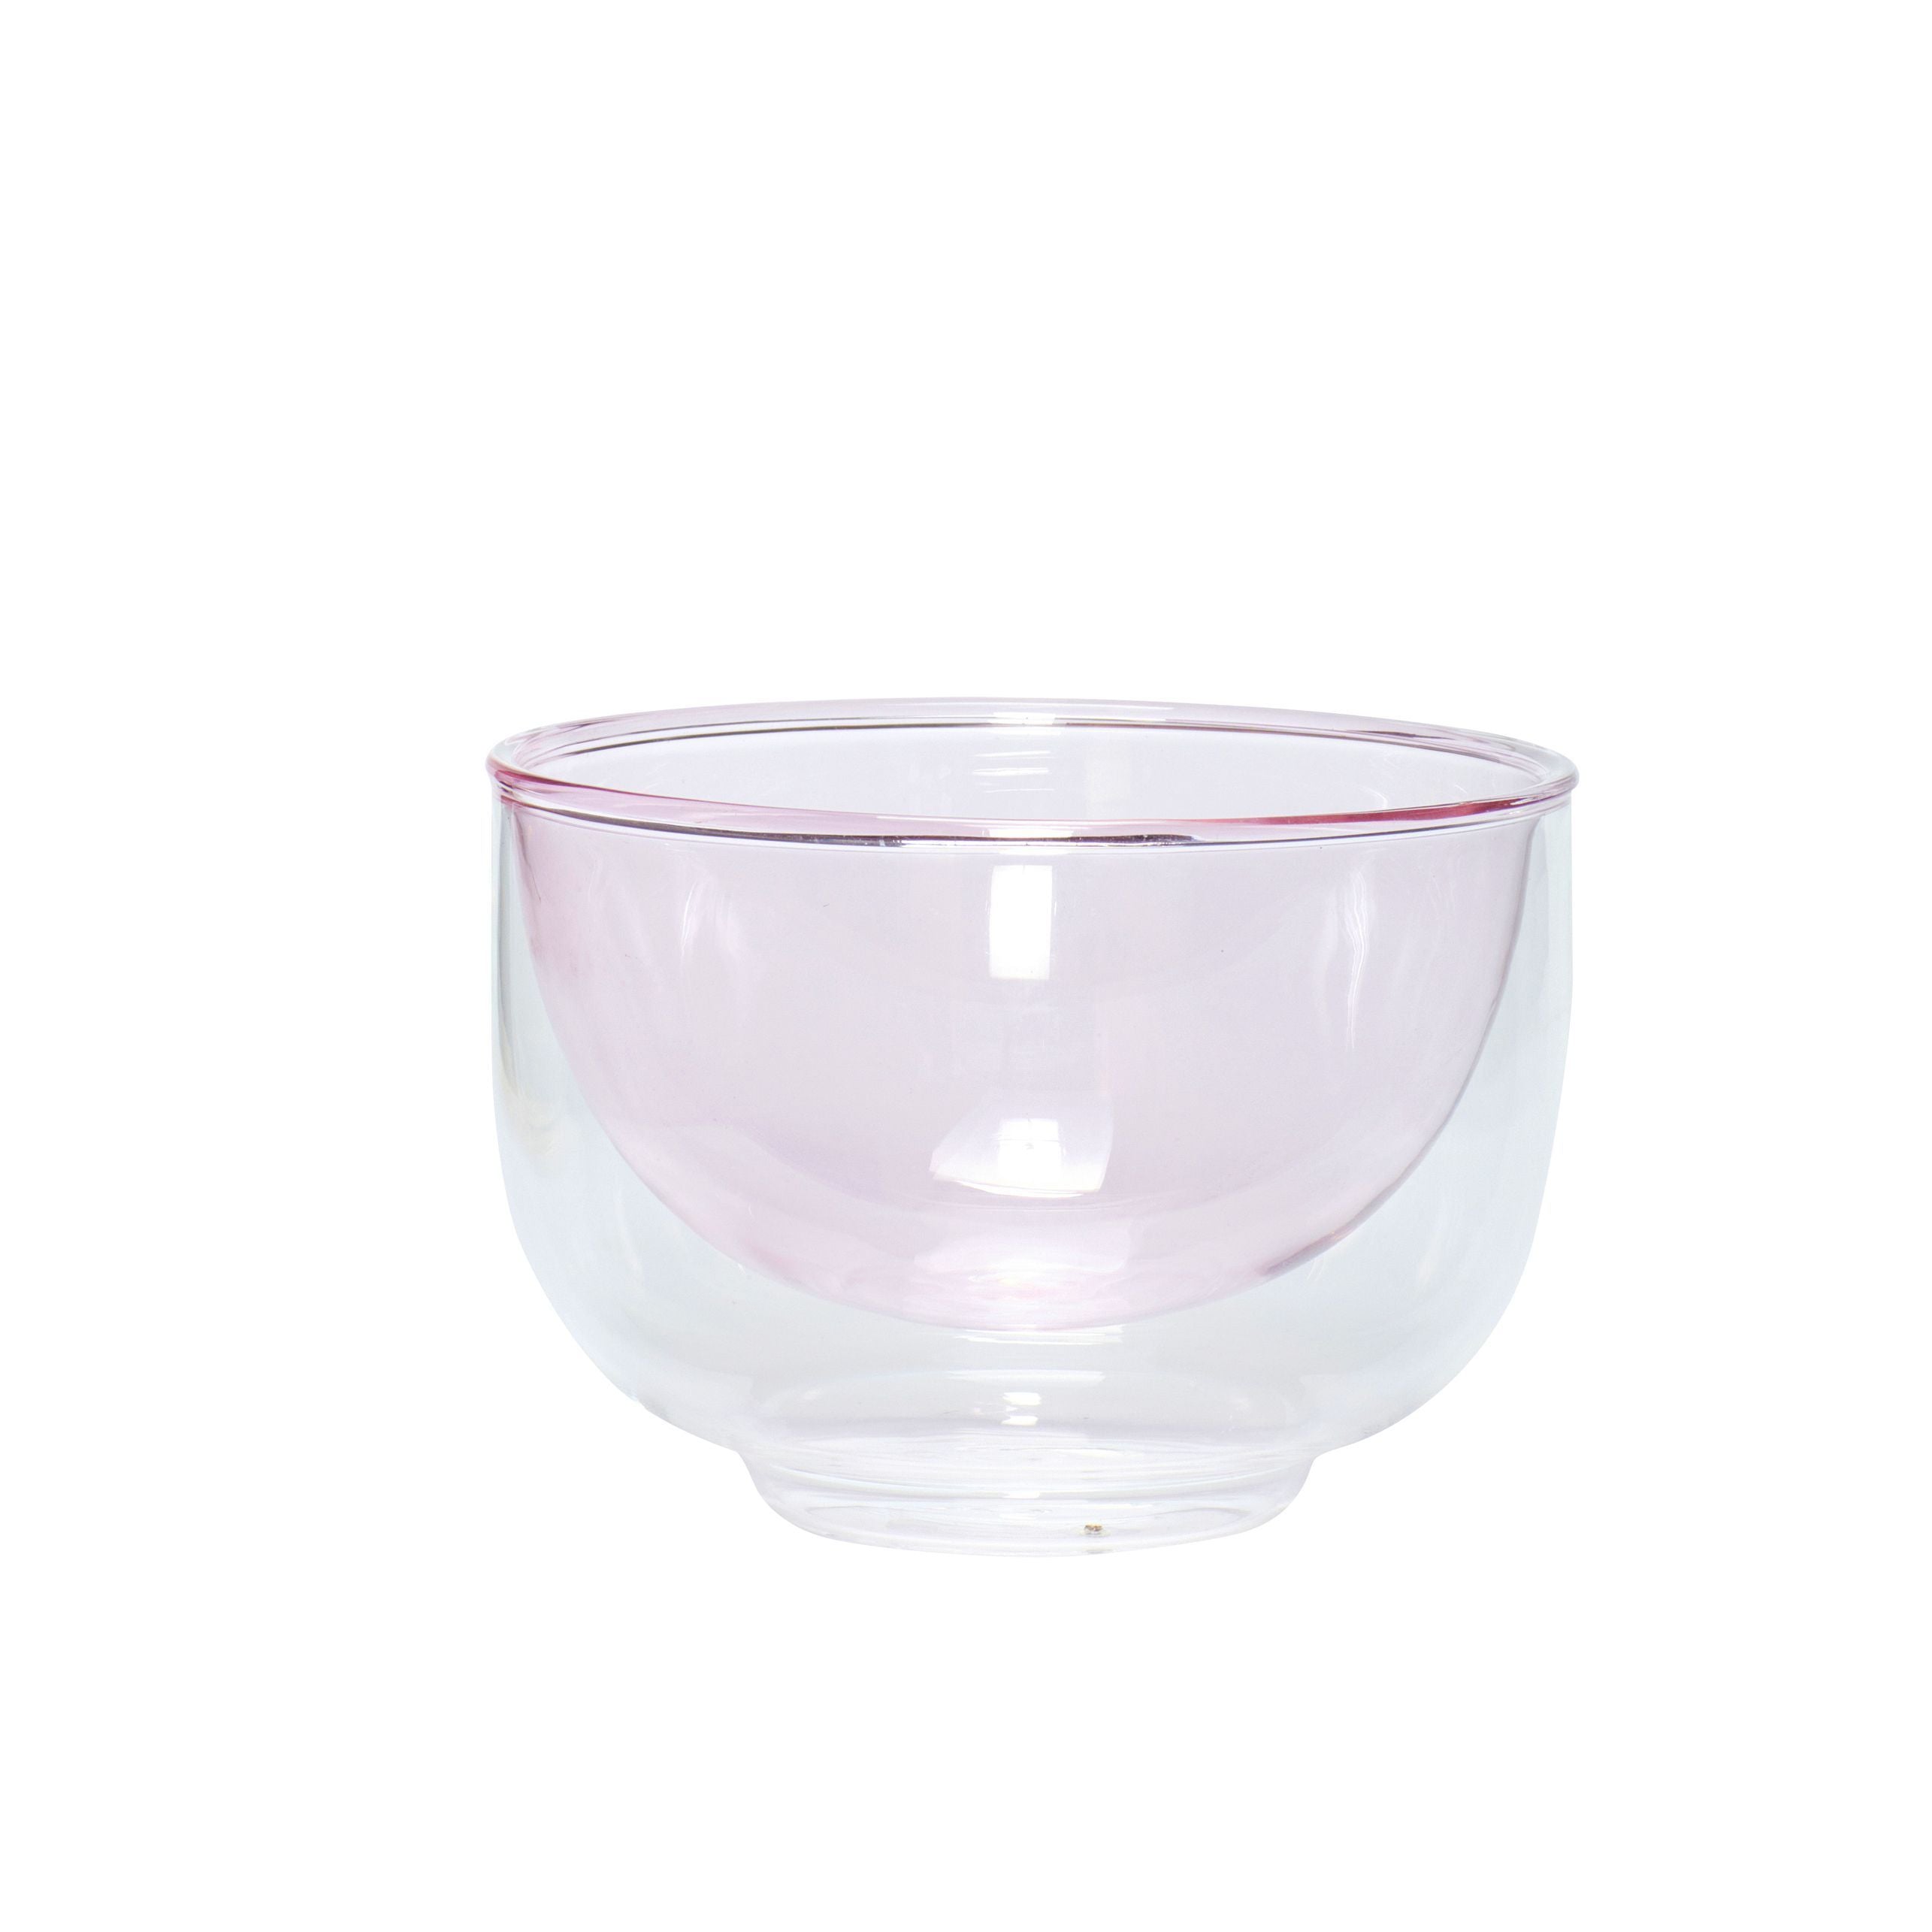 Hübsch售货亭碗玻璃透明/粉红色